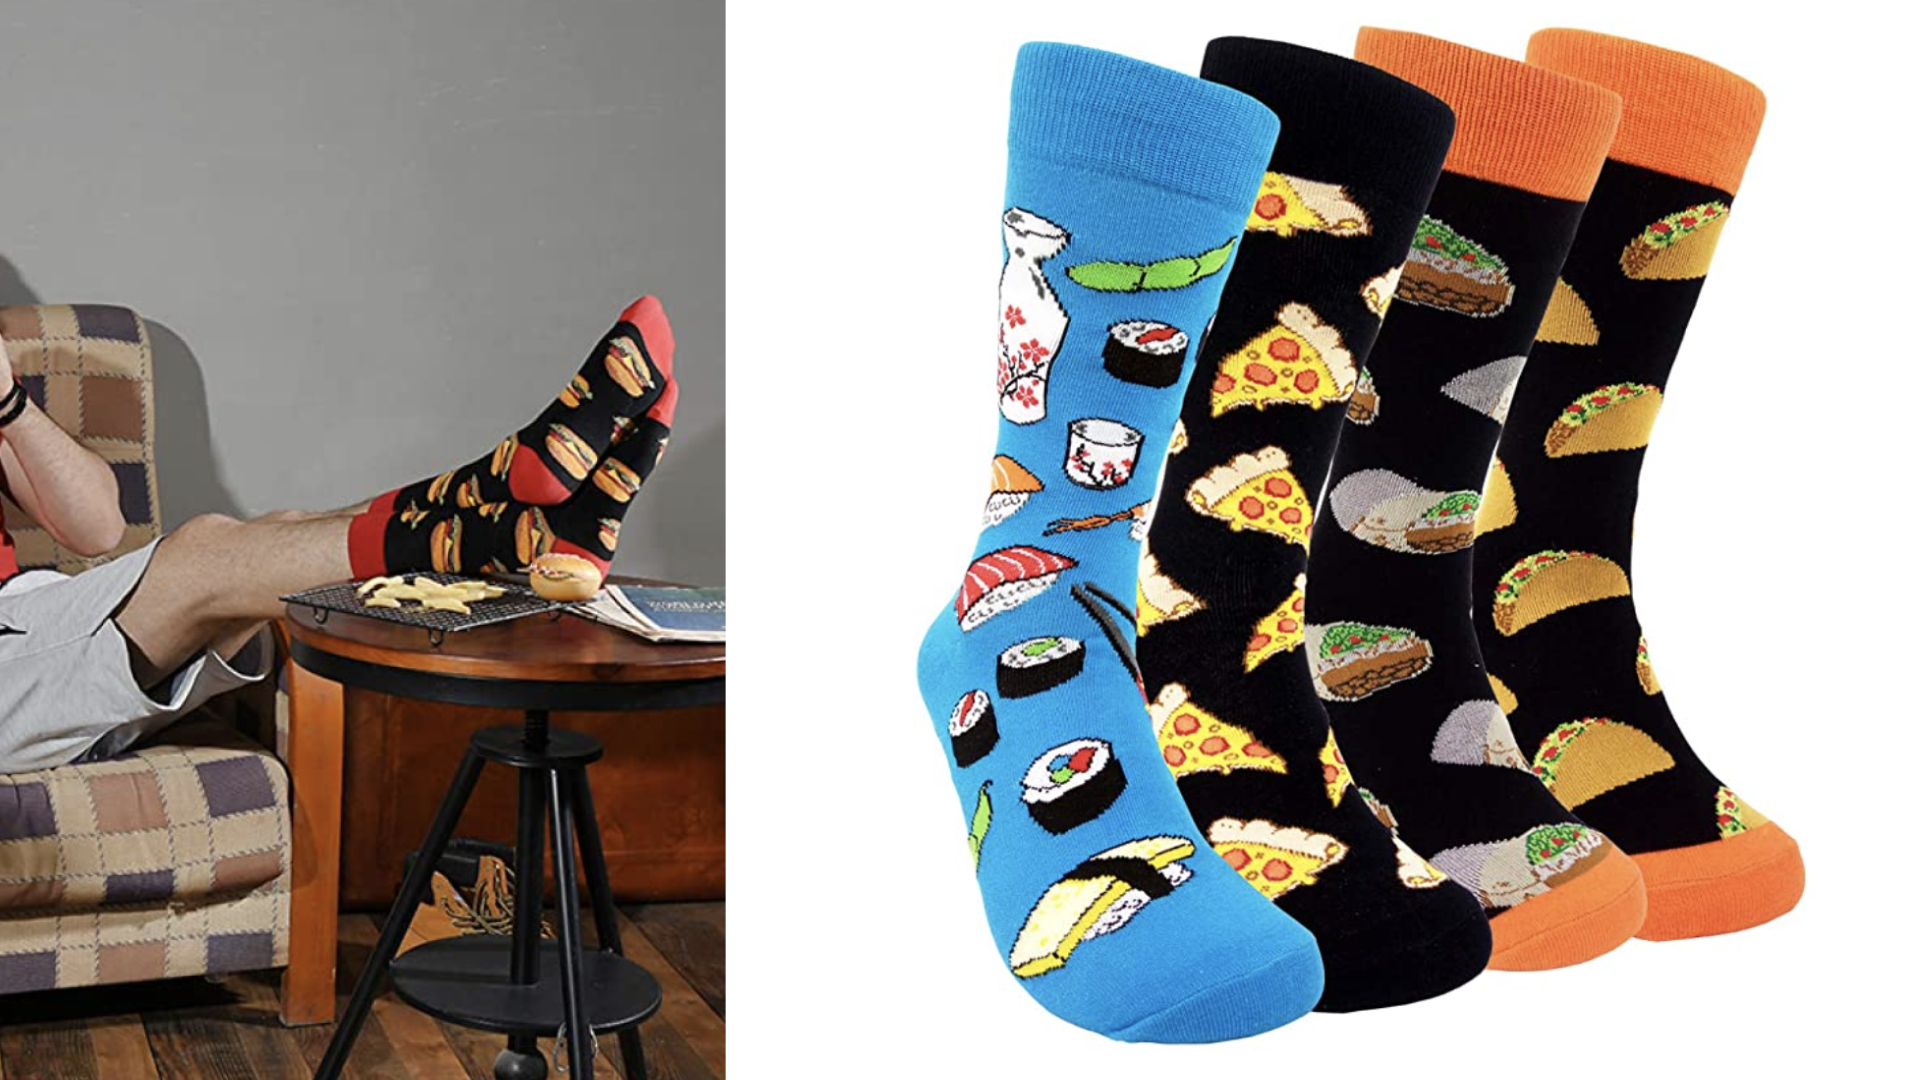 Food-themed socks